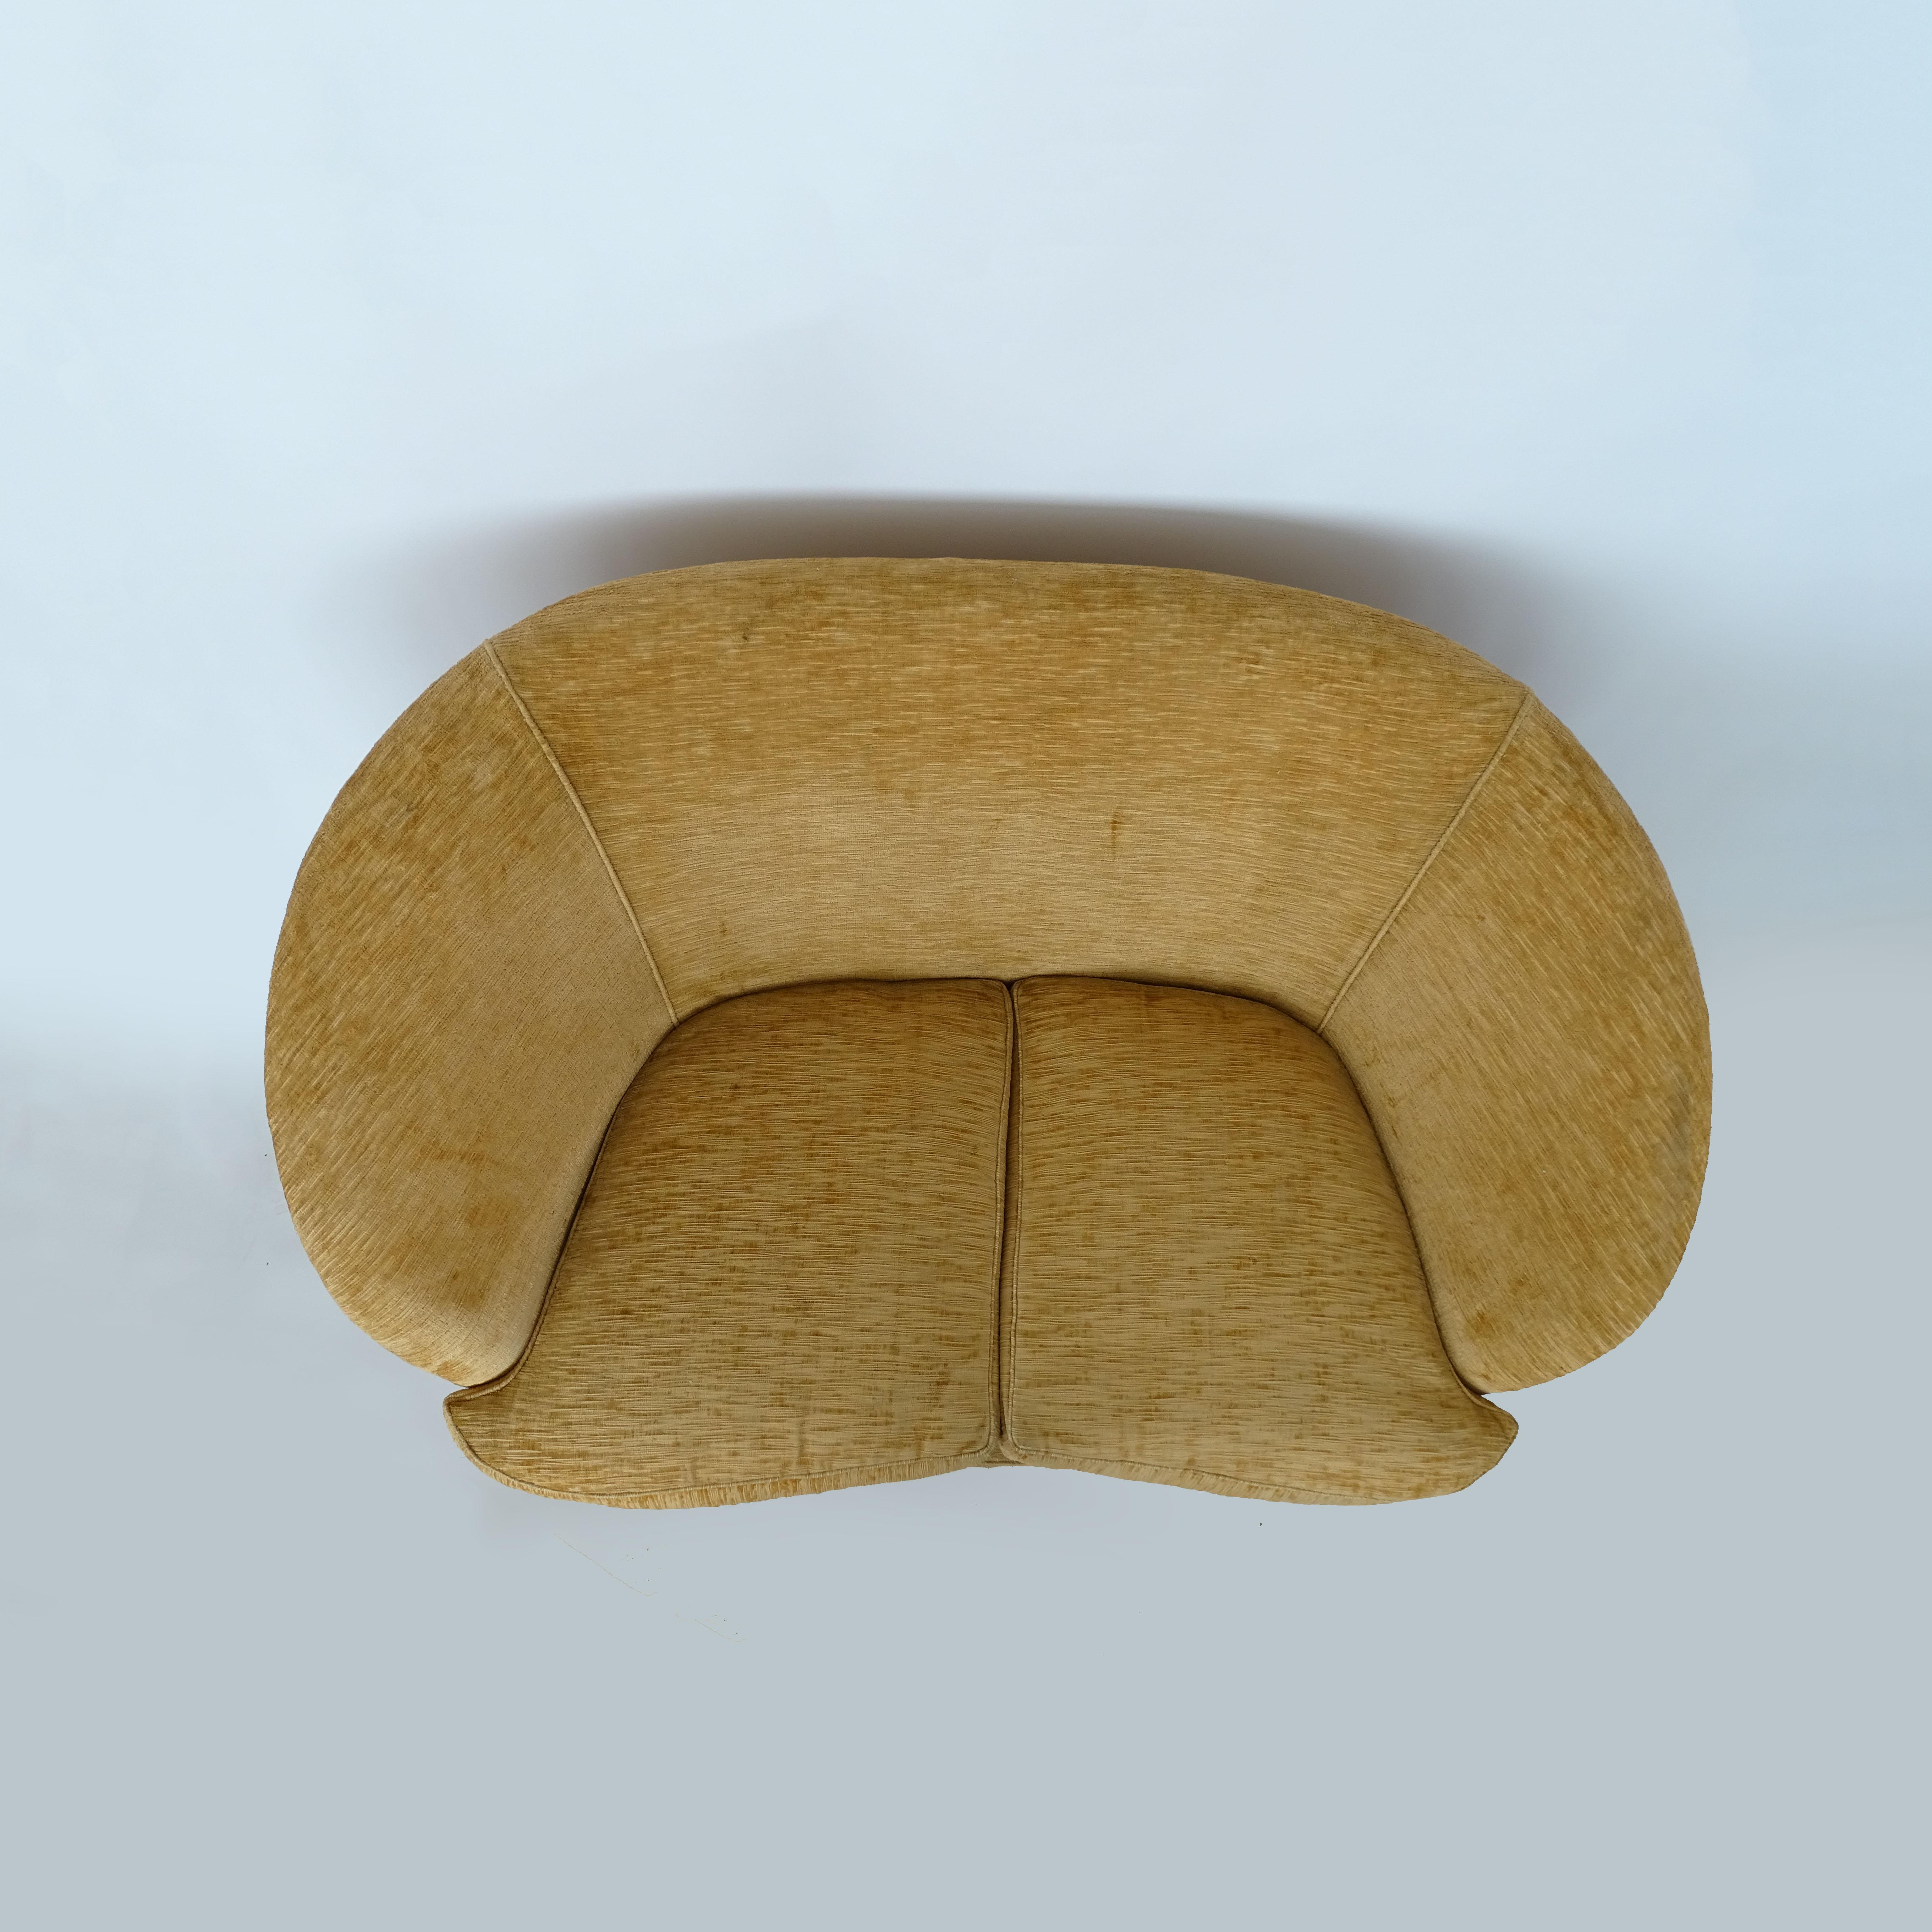 Upholstery Love seat sofa by Casa & Giardino, Italy 1940s